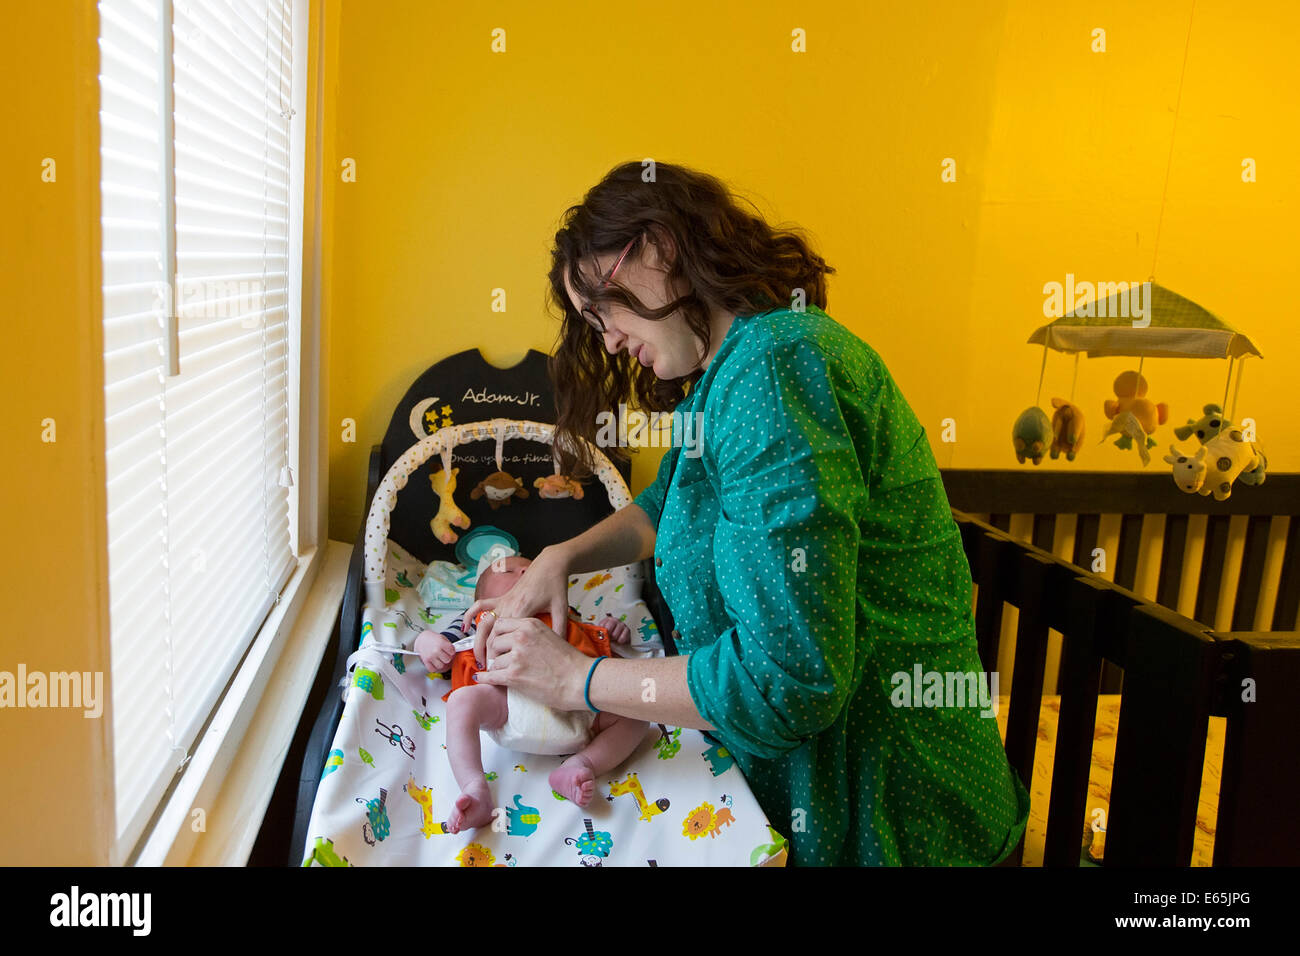 Denver, Colorado - une jeune mère change une couche sur son fils âgé d'une semaine. Banque D'Images